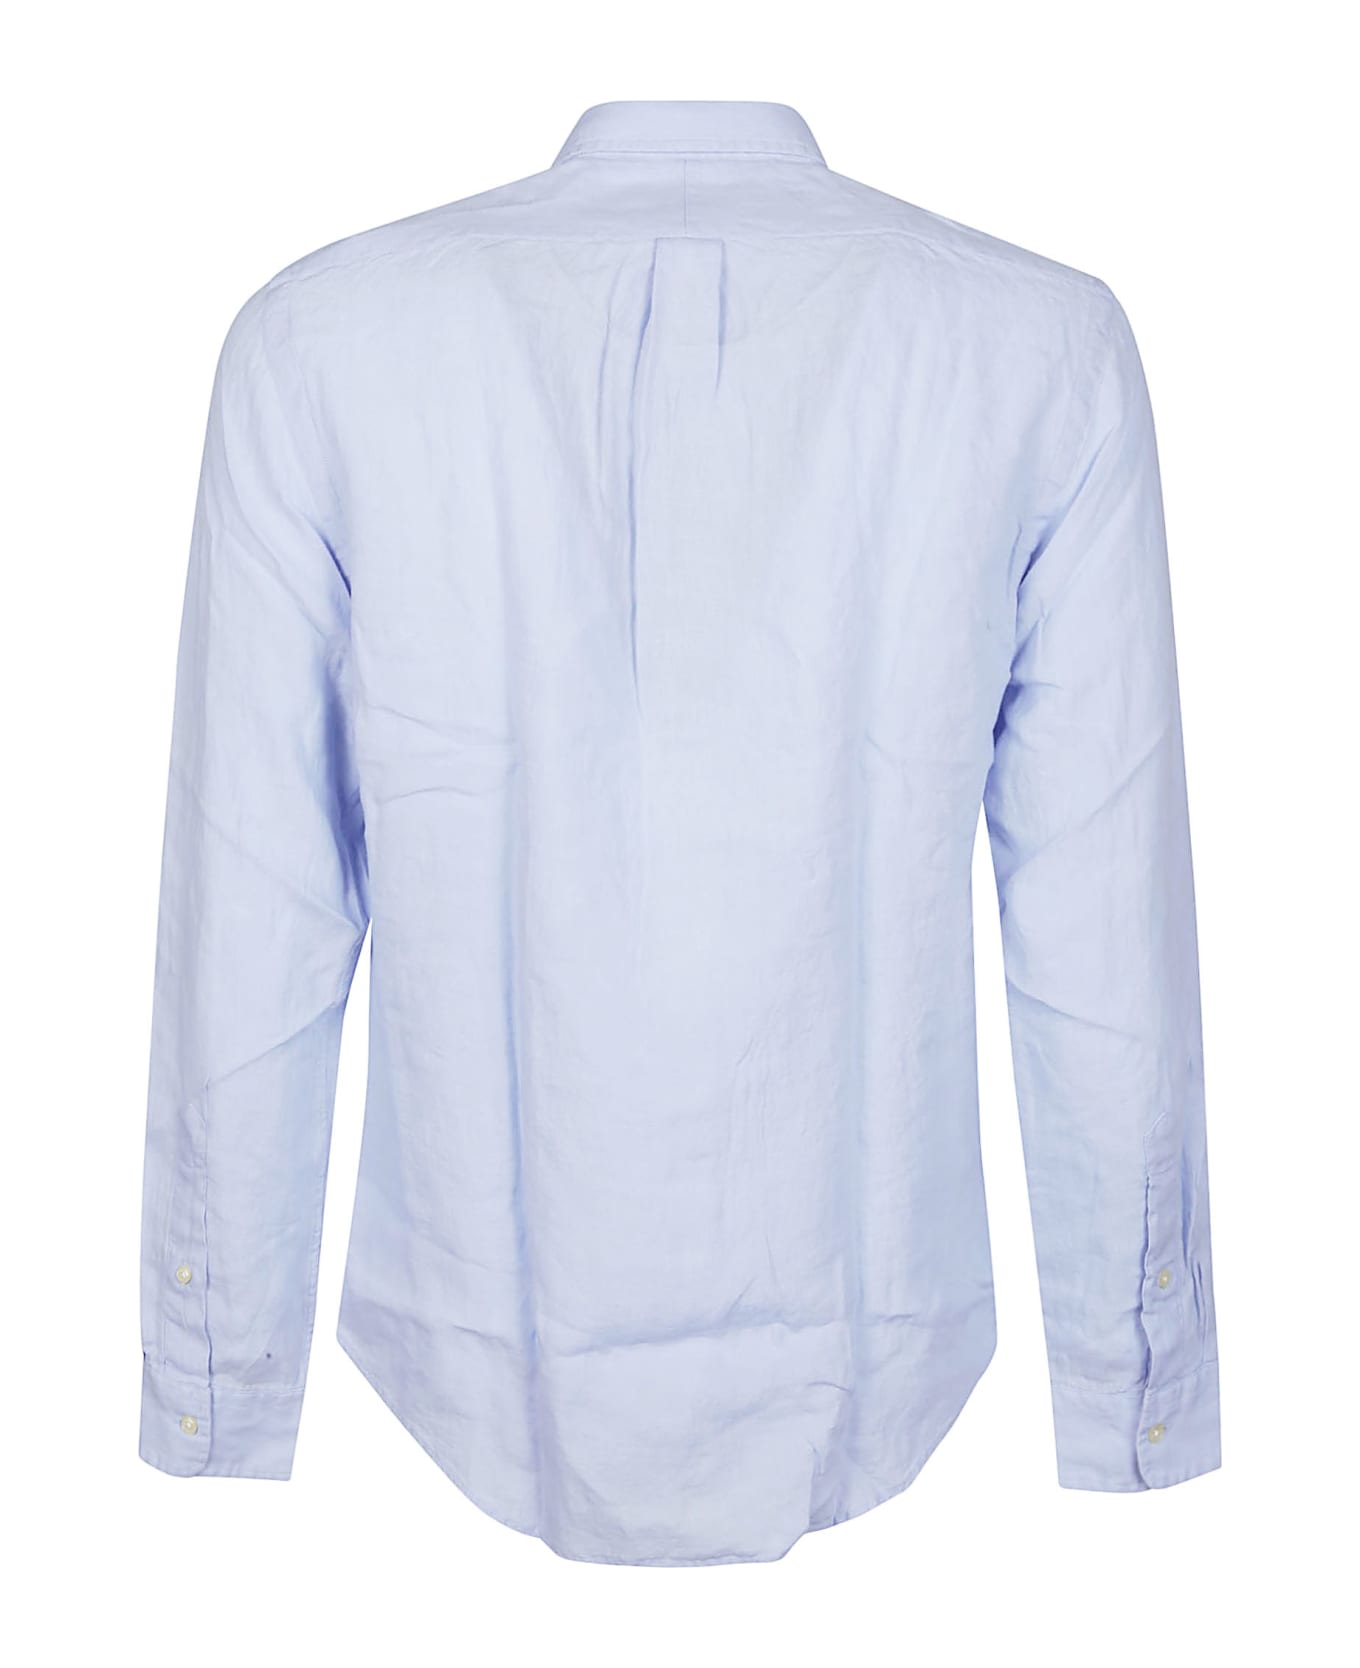 Ralph Lauren Long Sleeve Sport Shirt - BLUE HYACINTH シャツ